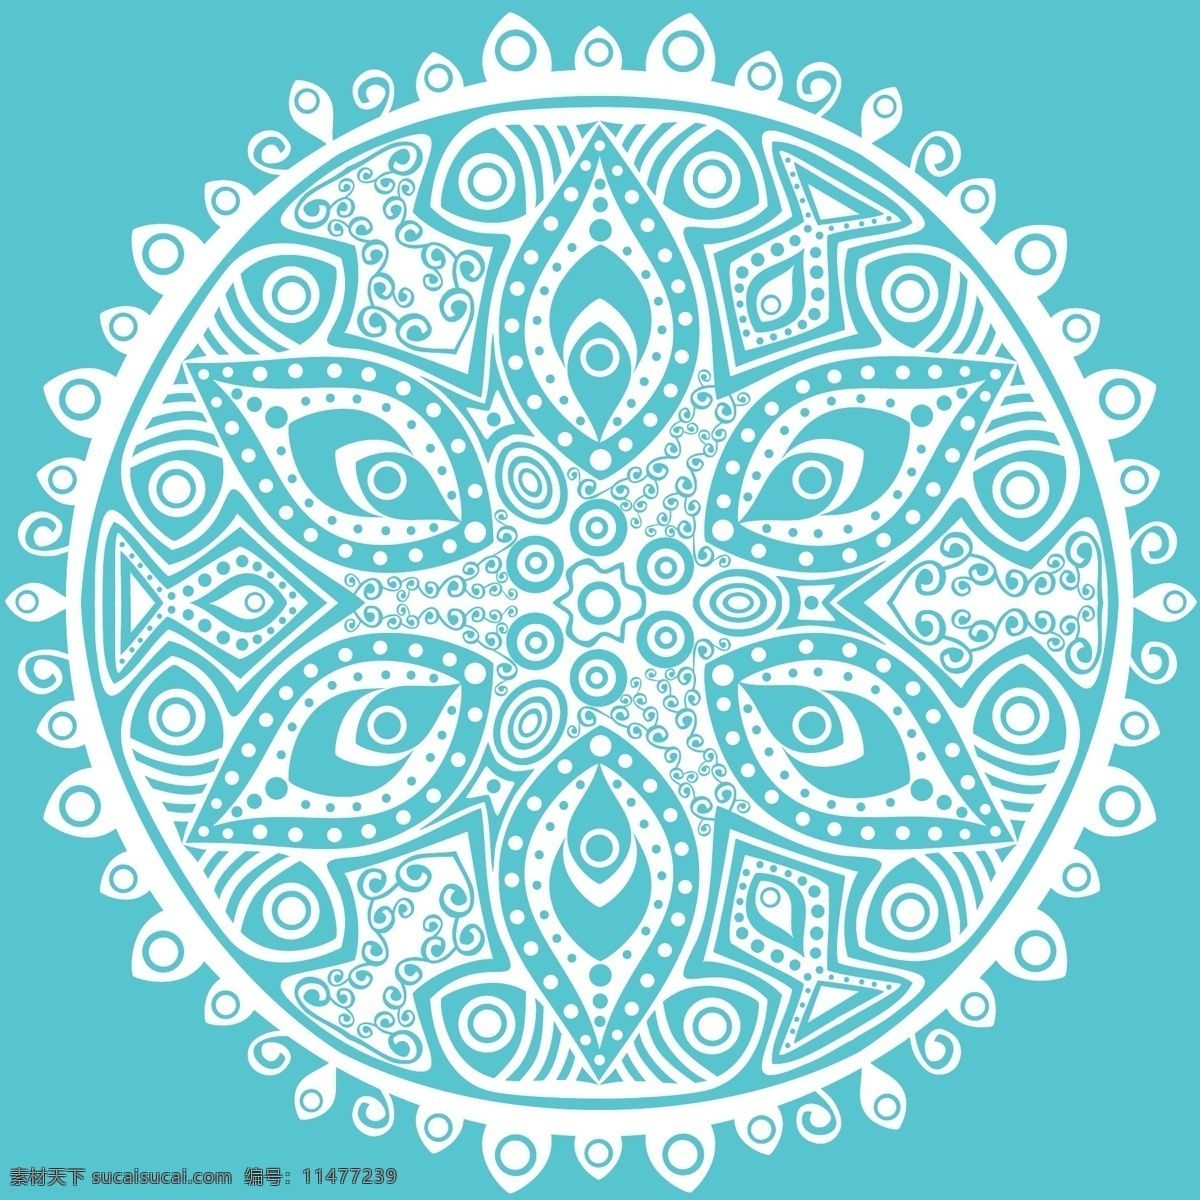 曼荼罗 背景 花 抽象 花卉 装饰 蓝色的背景 蓝色 颜色 曼陀罗 花的背景 墙纸 阿拉伯语 印度 形状 伊斯兰教 色彩 下